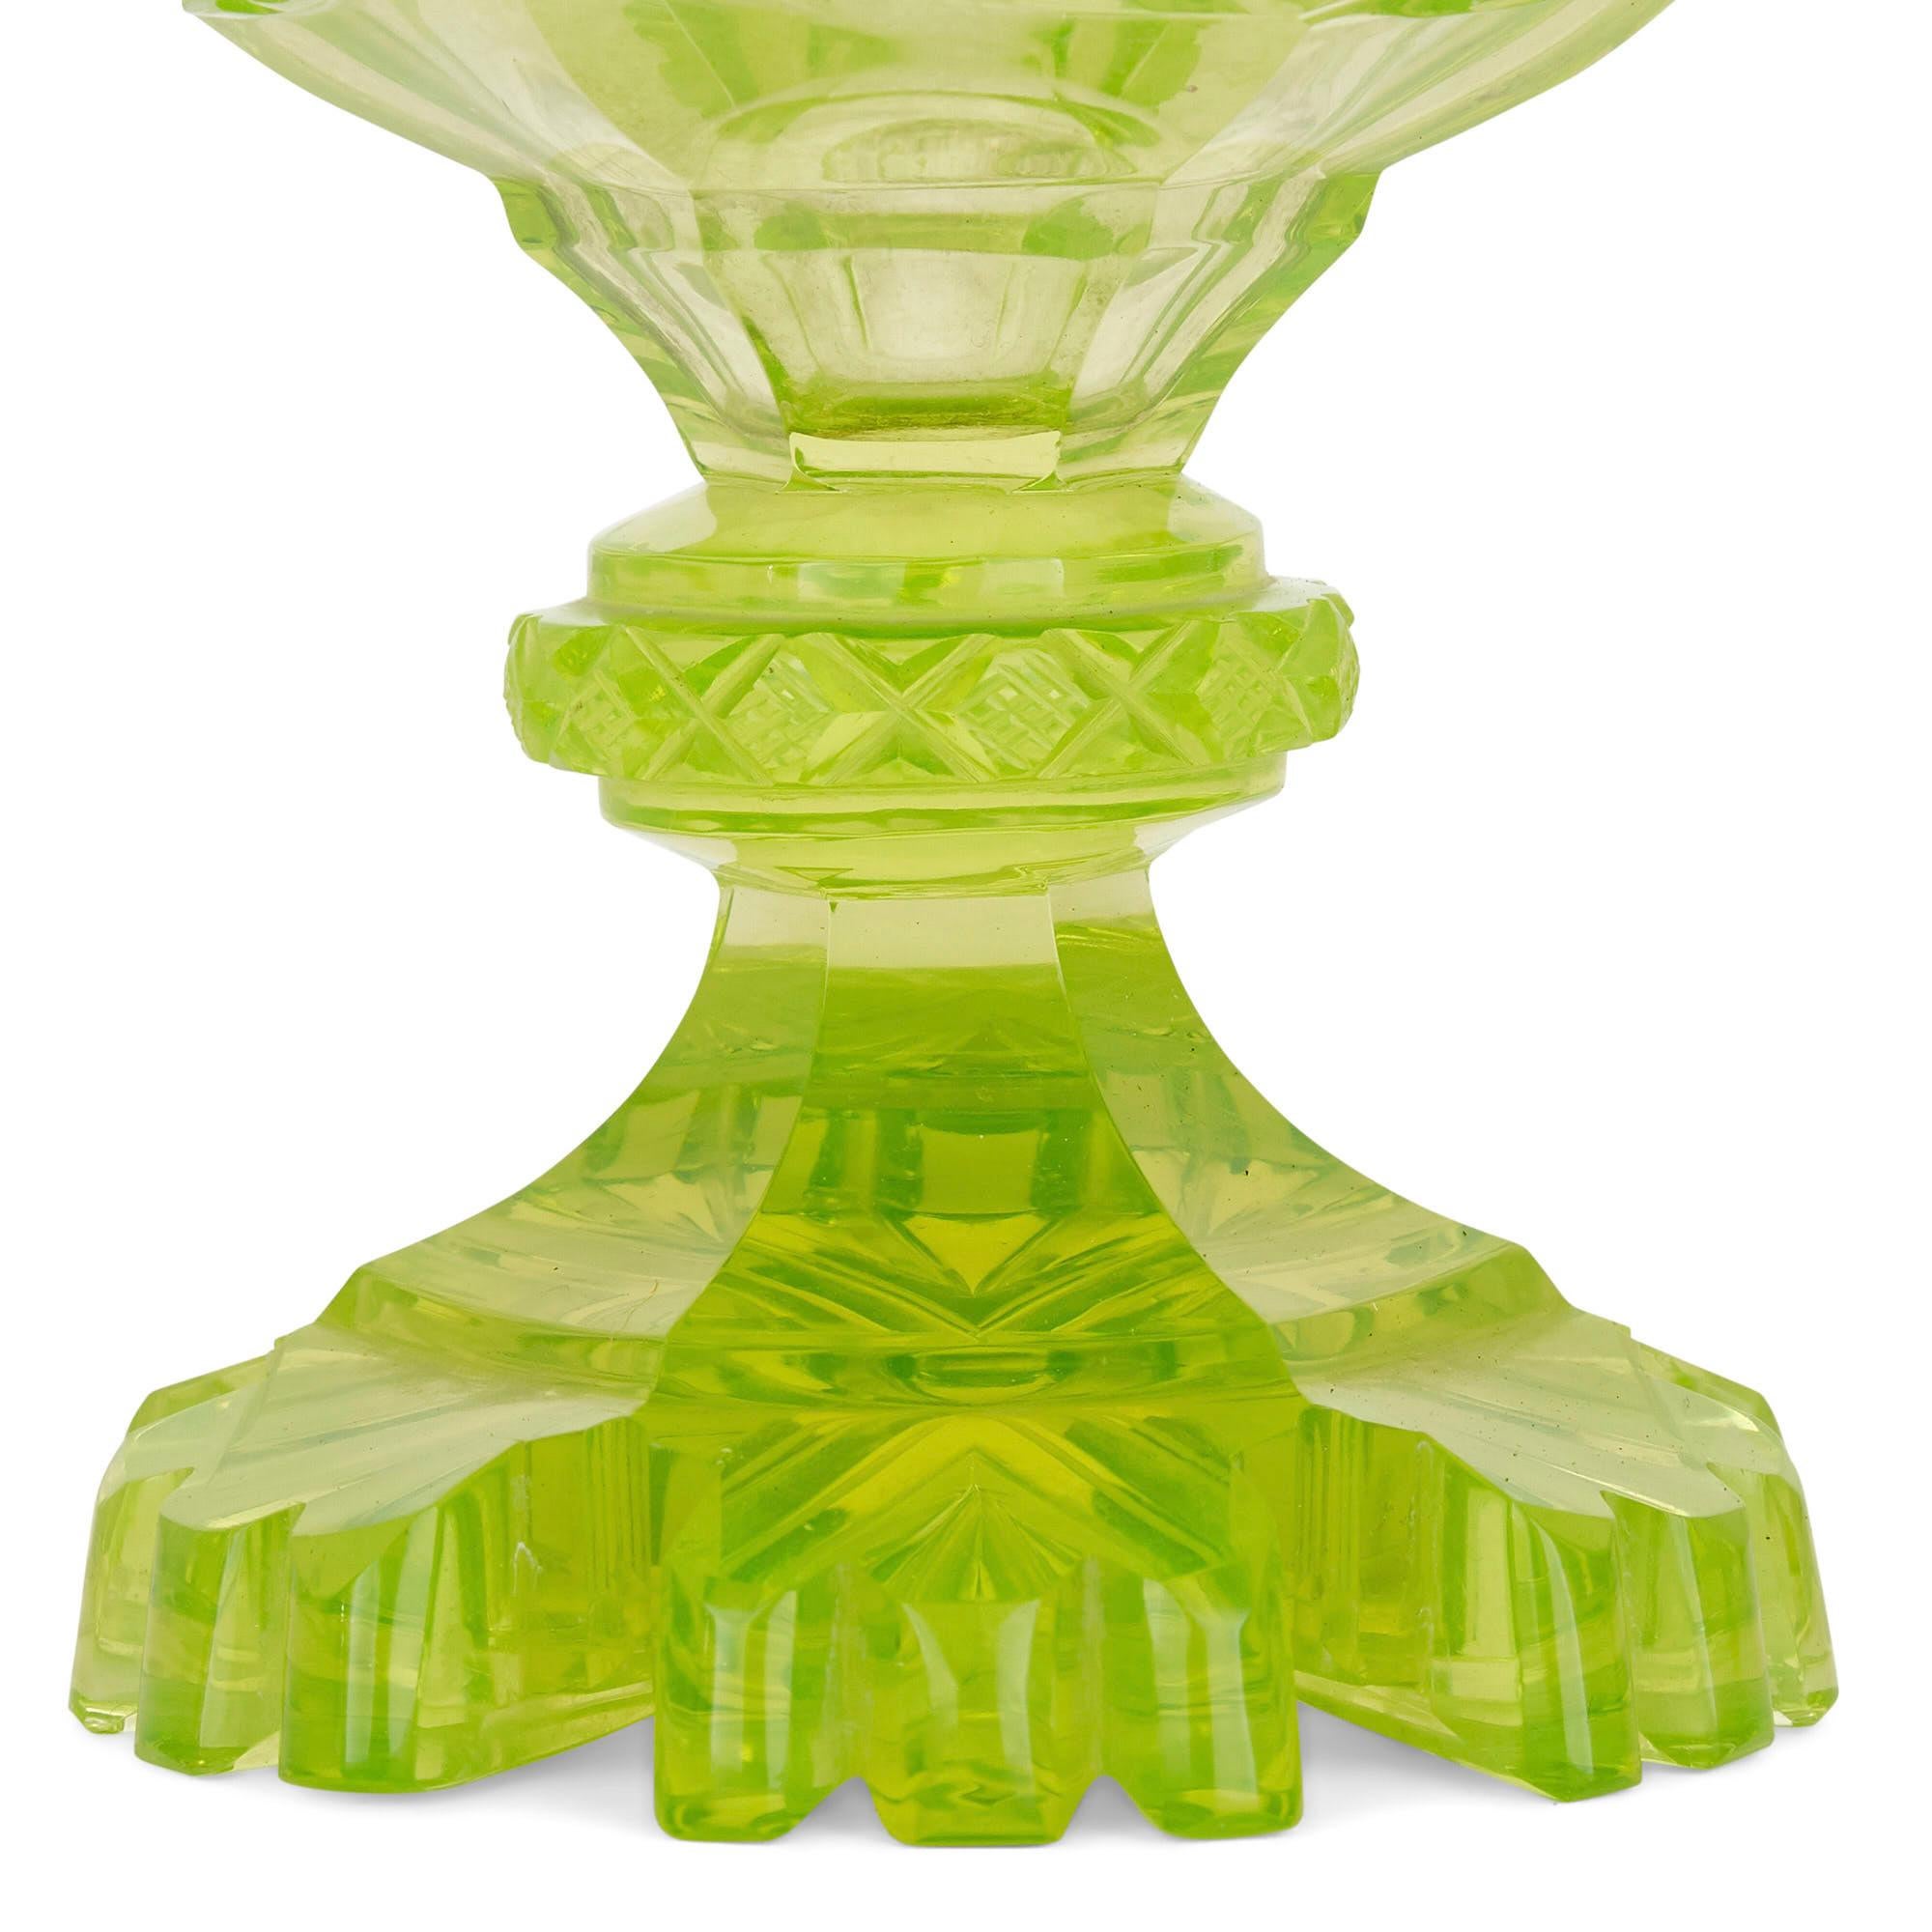 uranium glass vase for sale